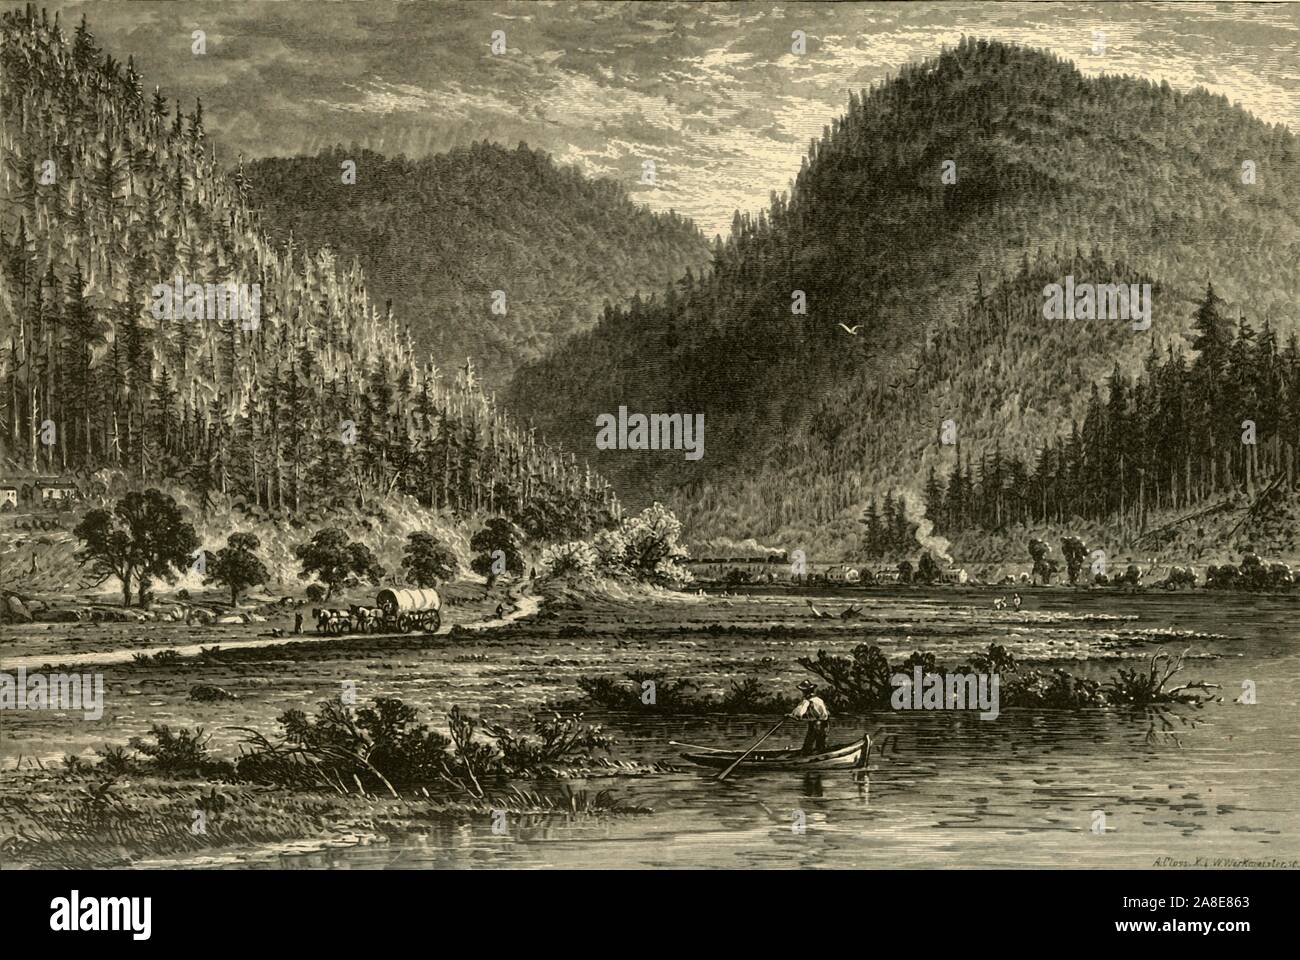 "Tyrone Lücke, Blick von der Brücke", 1874. Die Juniata Flusses, Pennsylvania, USA. "Die Hügel, am Fuße der Berge liegen zeigen schöne Bauernhäuser und deep-green-leaved Mais. Die Berge... so aussehen, als ob sie hatten Cleft-spalten, für die es eine große Lücke zwischen zwei Bergen ist. Diese in der Vergangenheit war zweifellos die Arbeit des Juniata [Fluss], und war nicht so schwer wie es aussieht; für die shaly Berge sind sehr unterschiedlich von den festen Kalkstein, durch die die Kanata seinen Weg schneidet mit Trenton fällt'. Von "Malerische Amerika; oder, in das Land, in der wir leben, eine Abgrenzung von Pen ein Stockfoto